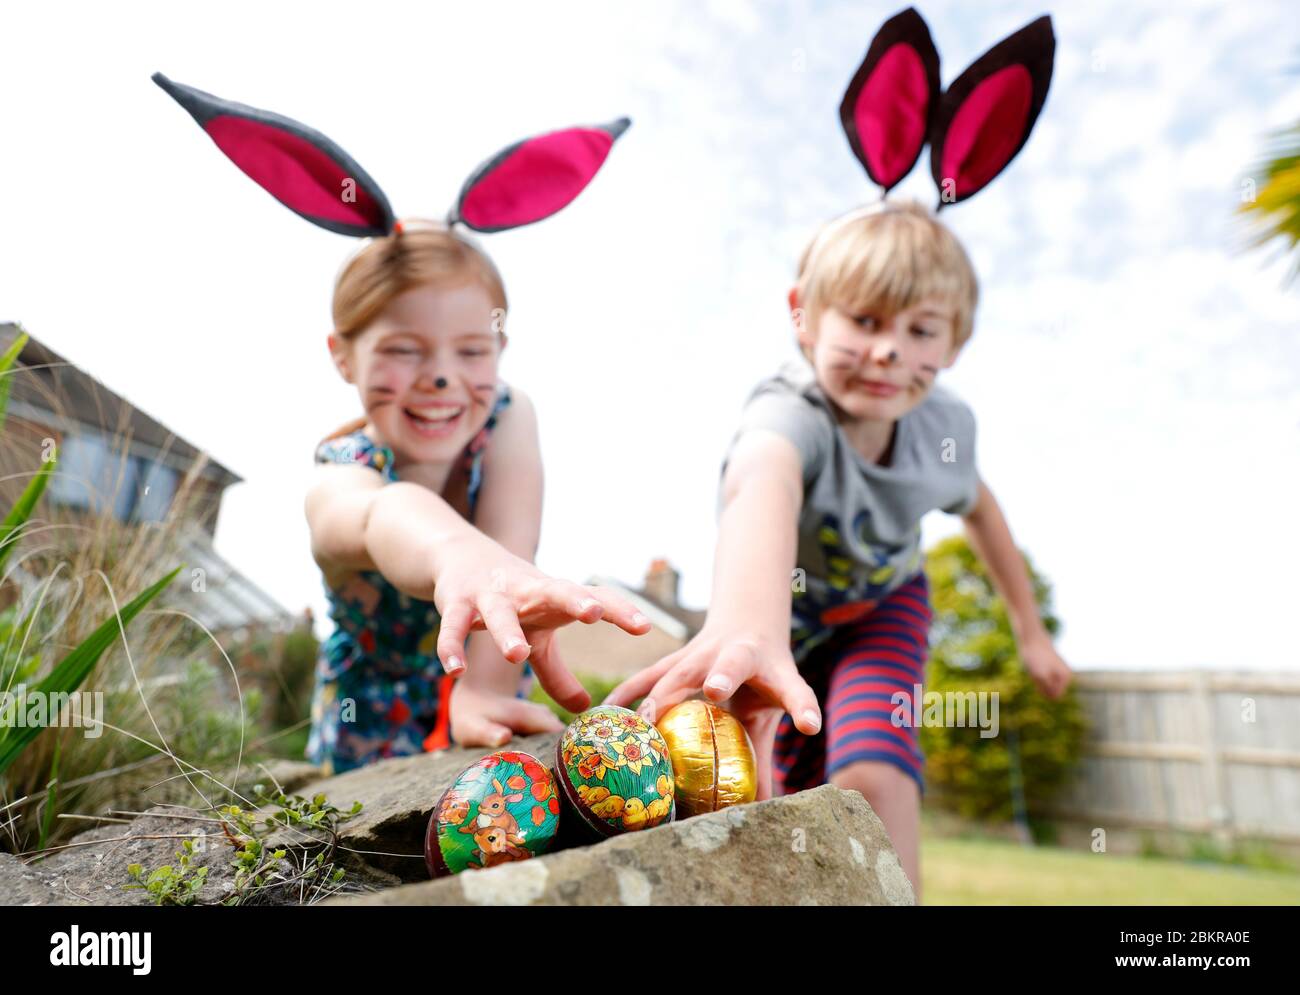 Un frère et une sœur, vêtu de peinture faciale et d'oreilles de lapin maison, participent à une chasse aux œufs le dimanche de Pâques dans leur jardin. Banque D'Images